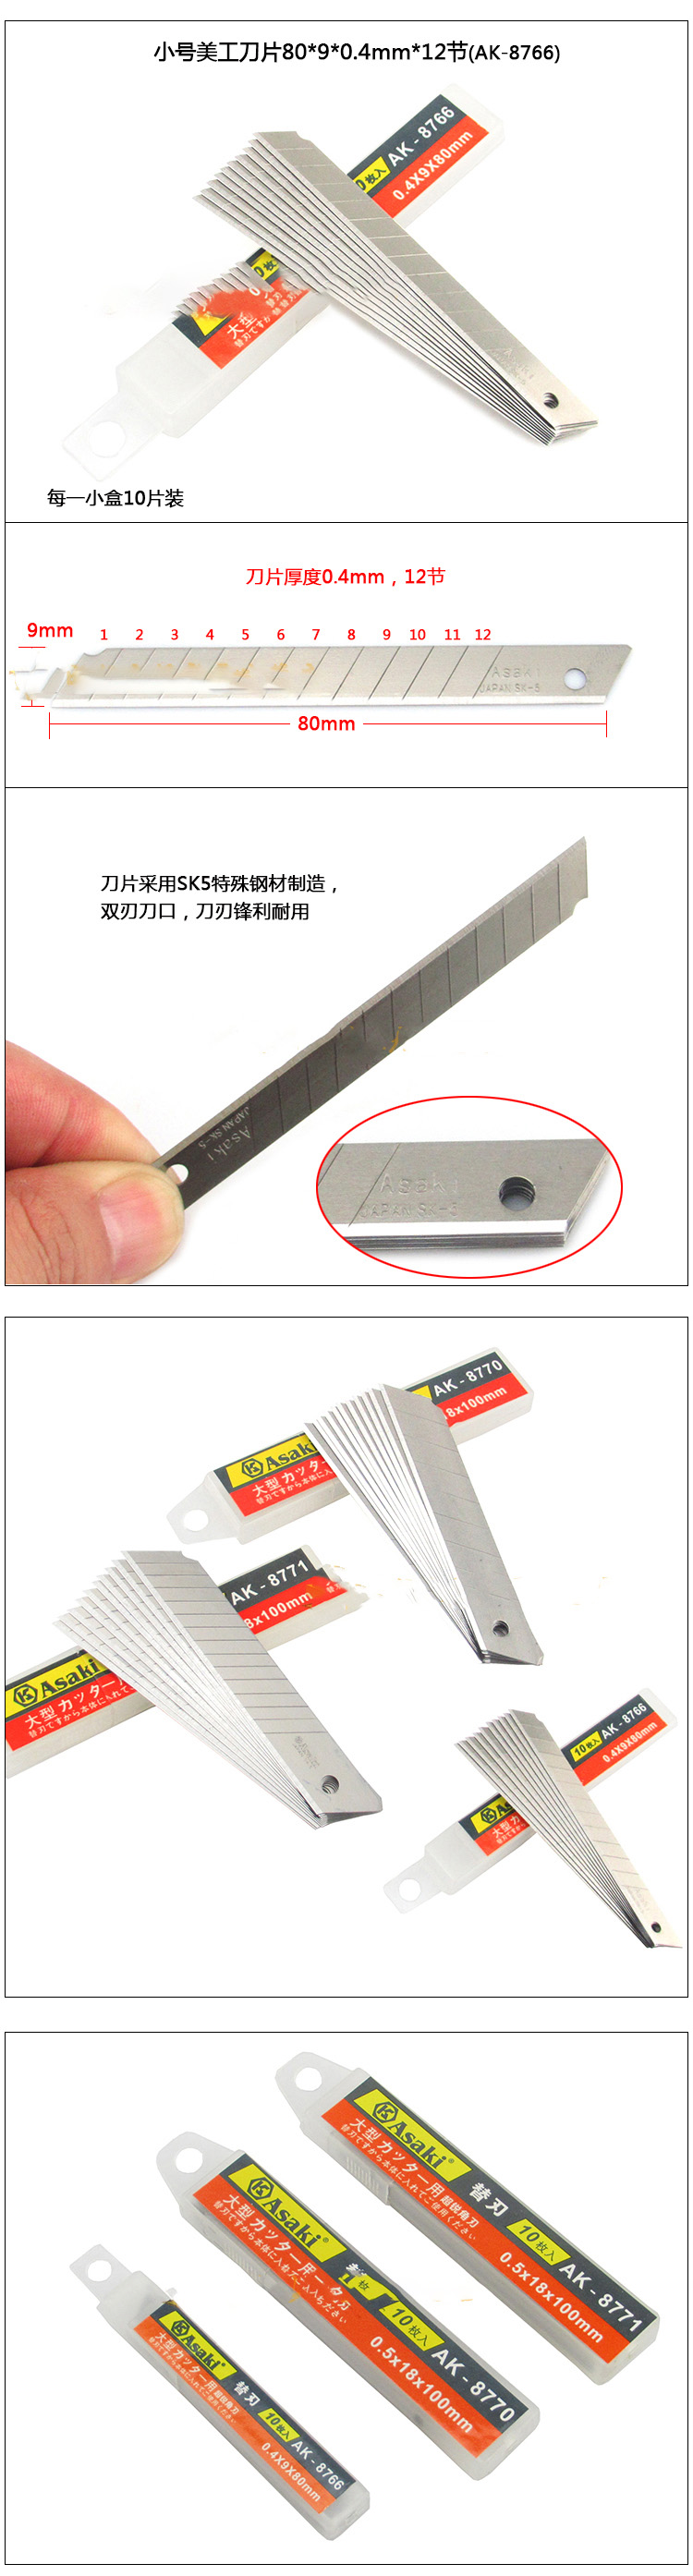 Hình ảnh 14 của mặt hàng Lưỡi dao rọc giấy 100 x 18 x 0.5mm 7 sọc Asaki AK-8770